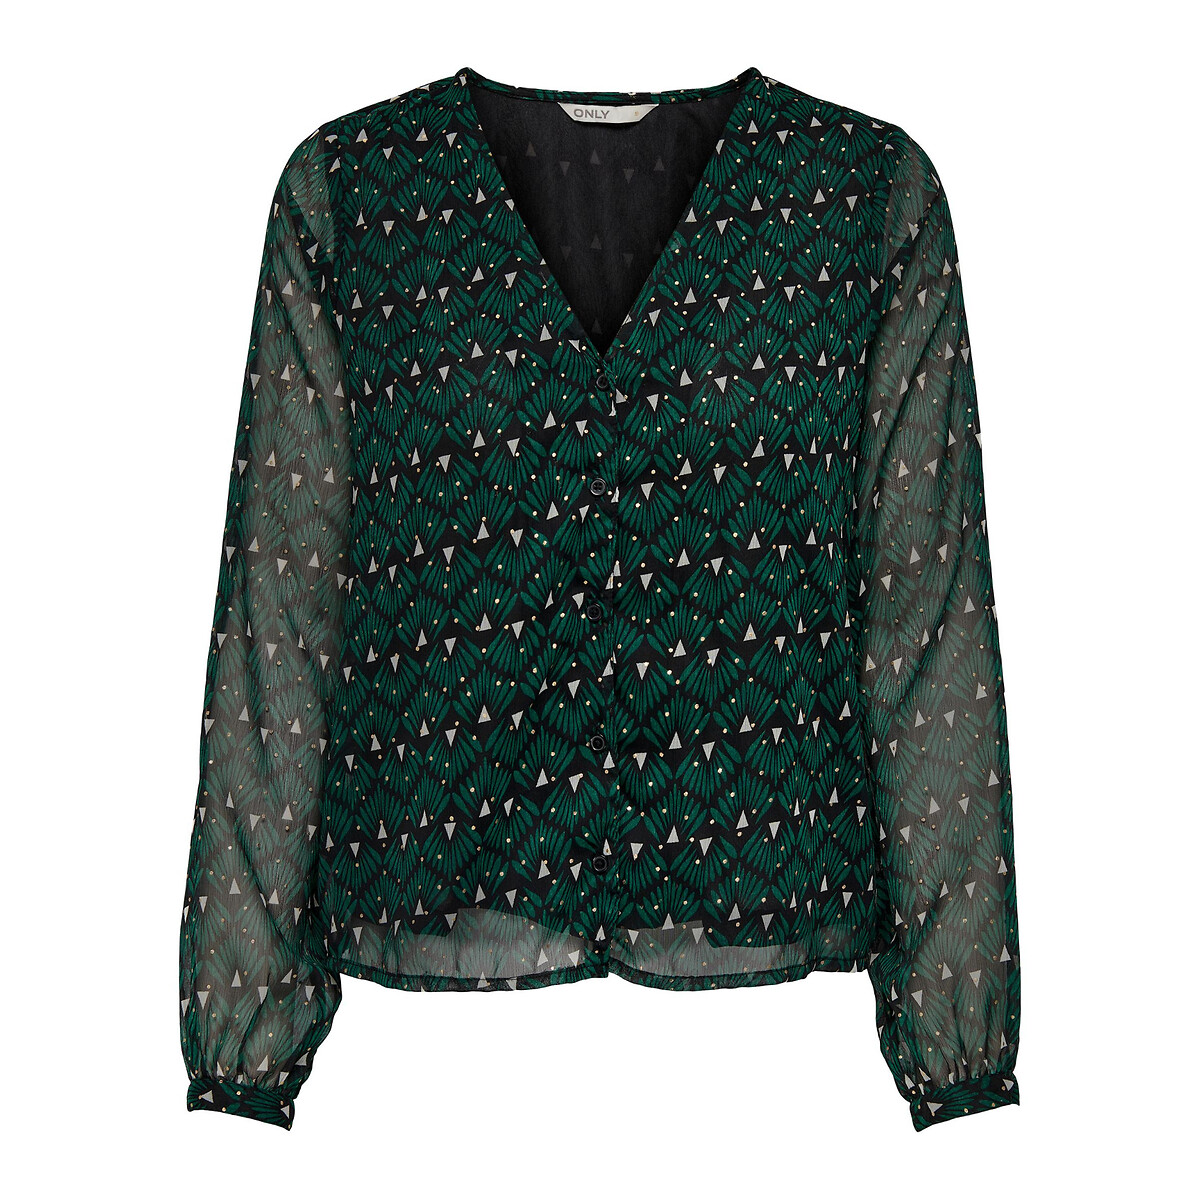 Блузка С принтом и V-образным вырезом L зеленый LaRedoute, размер L - фото 5